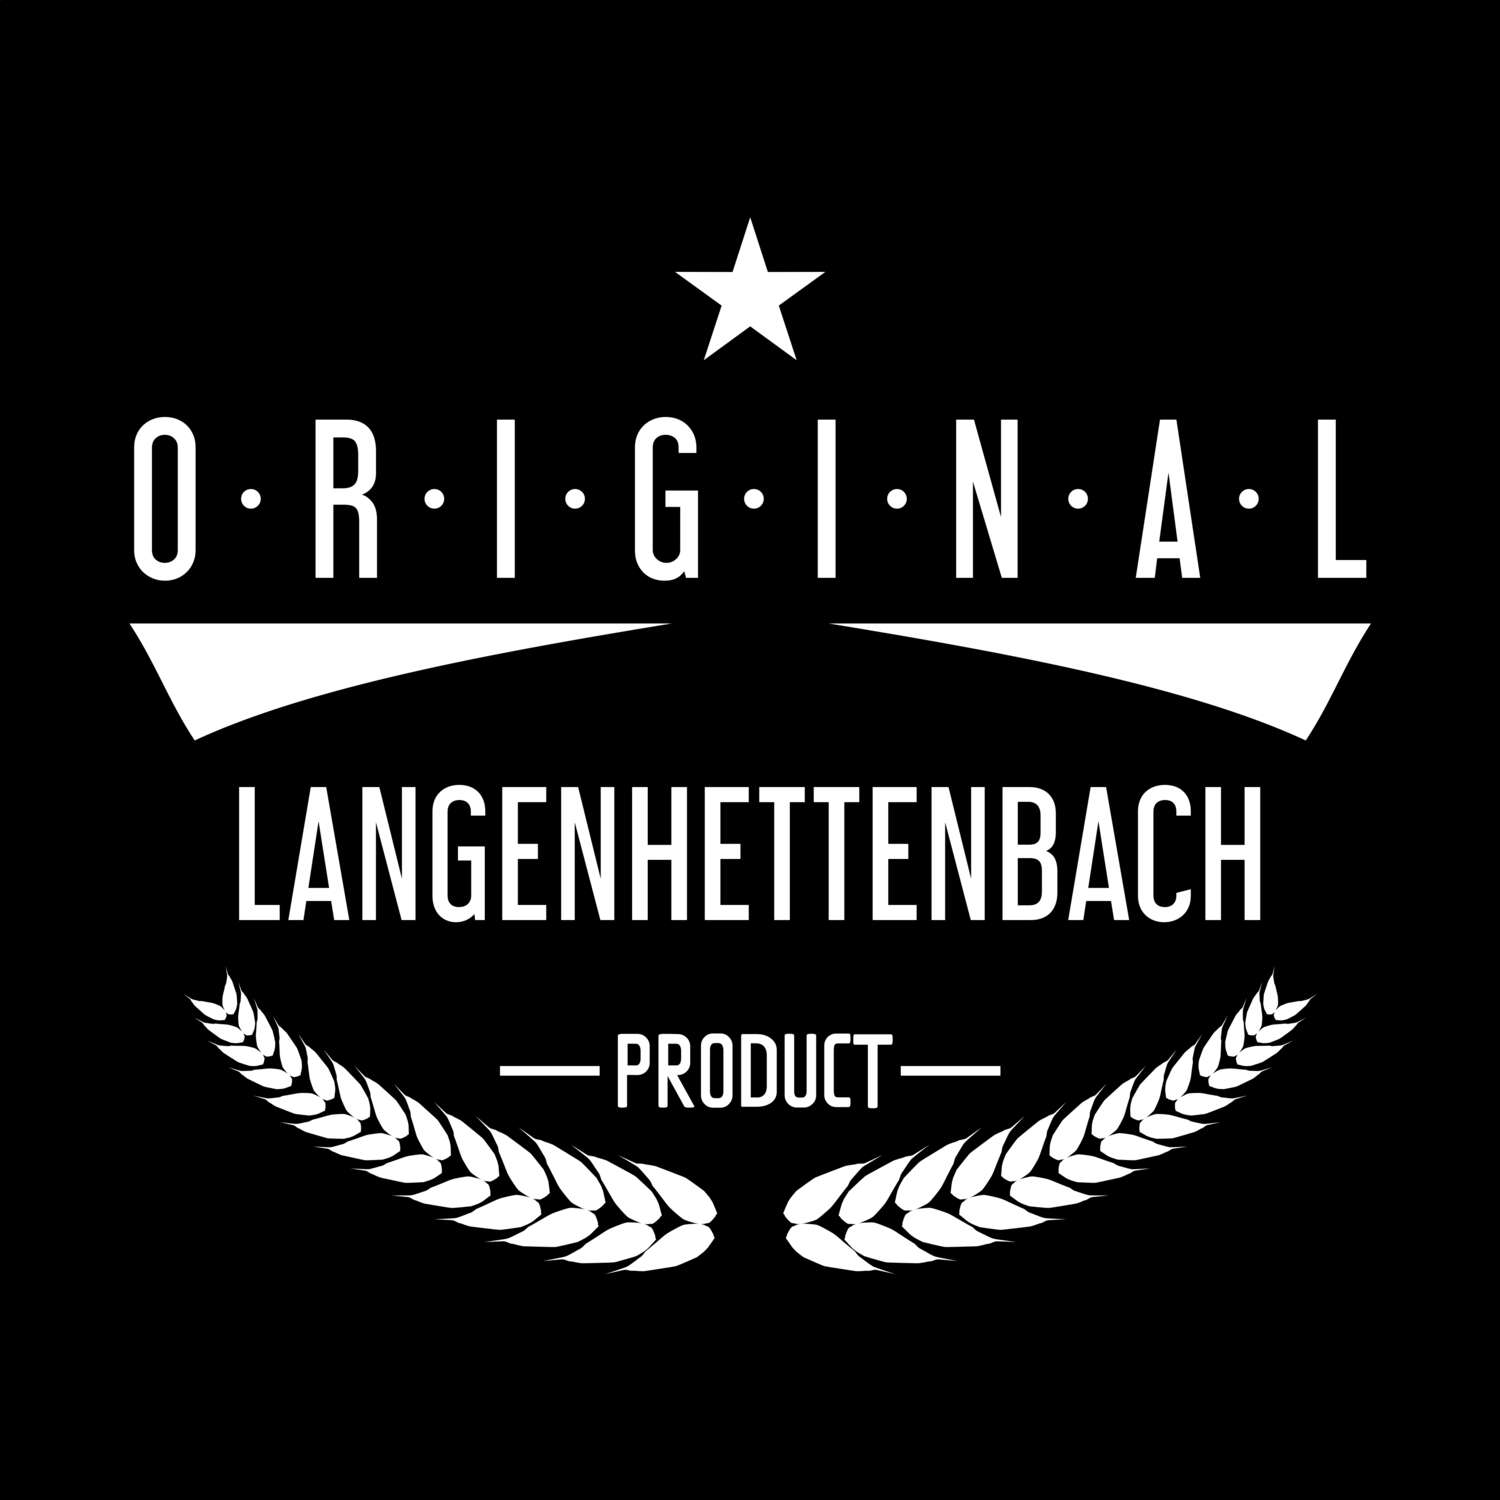 Langenhettenbach T-Shirt »Original Product«